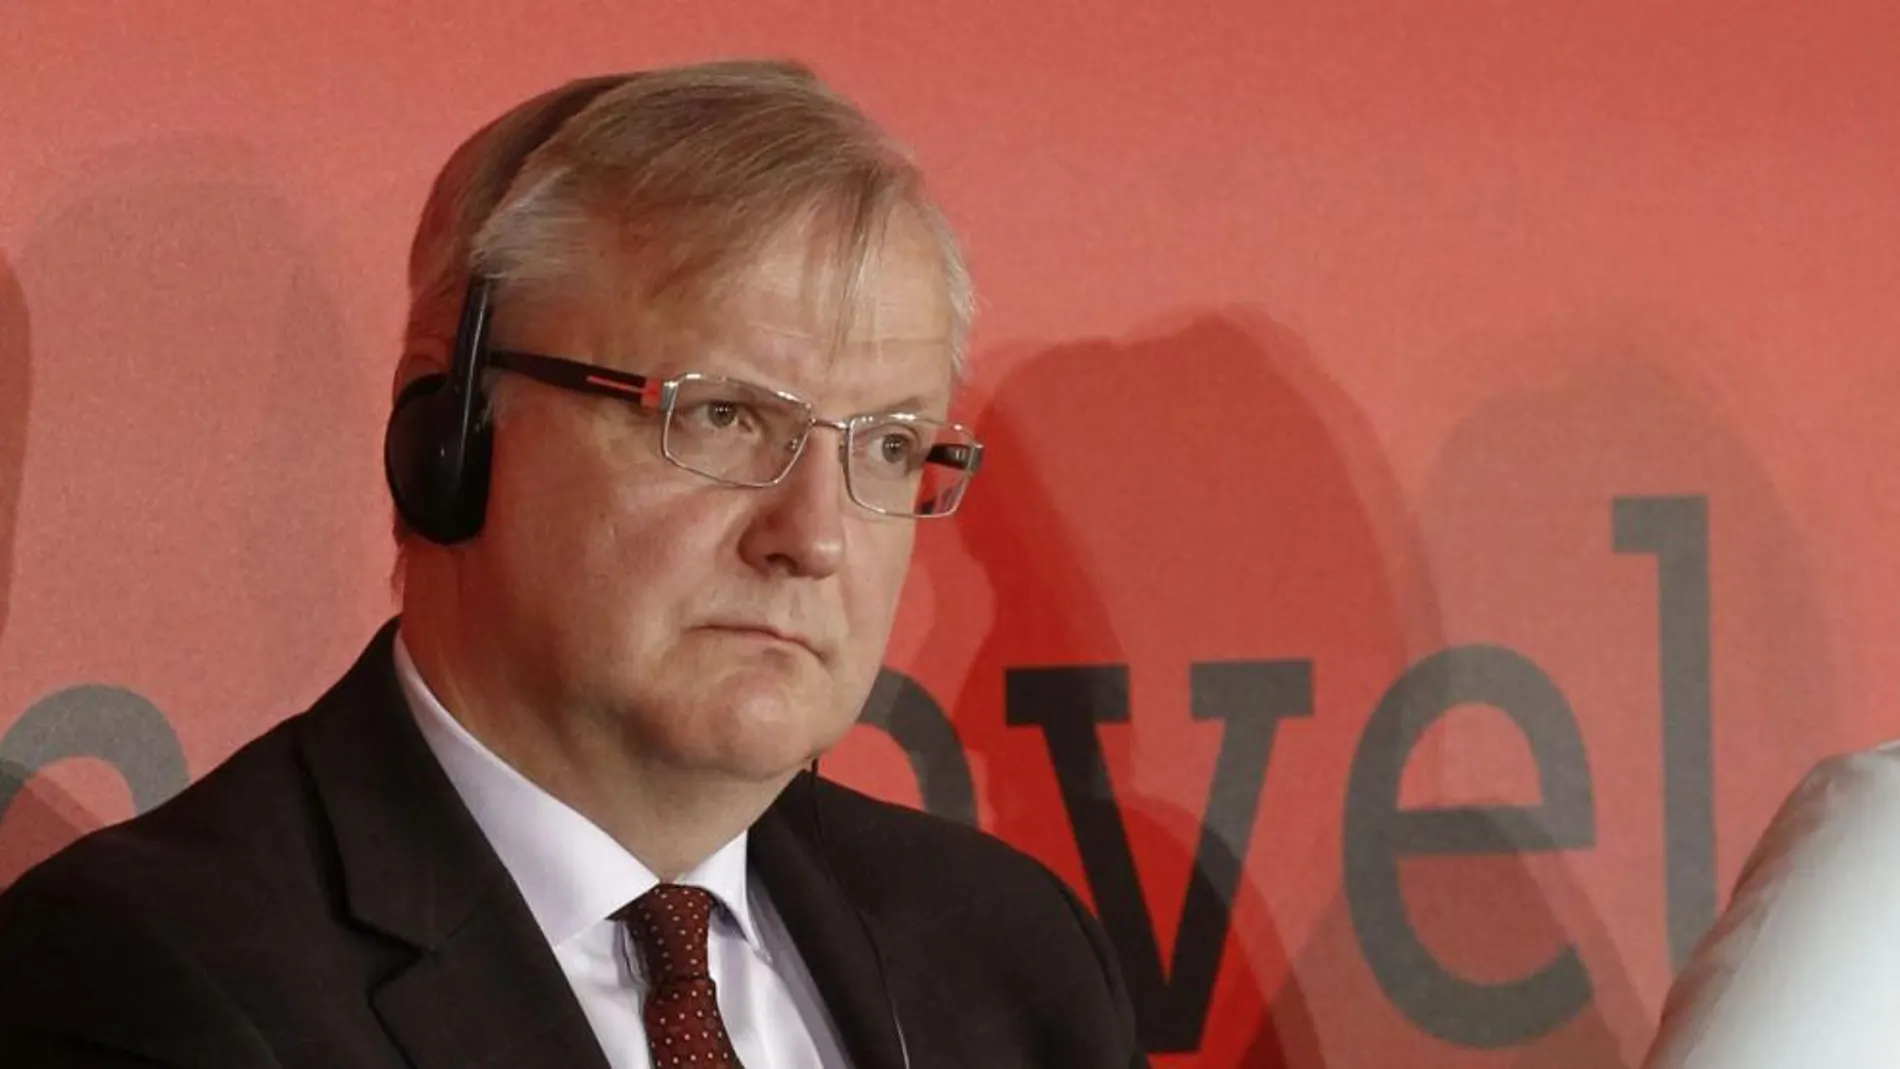 El vicepresidente de la Comisión Europea (CE) y responsable de Asuntos Económicos y Monetarios, Olli Rehn, durante su participación en el grupo de debate